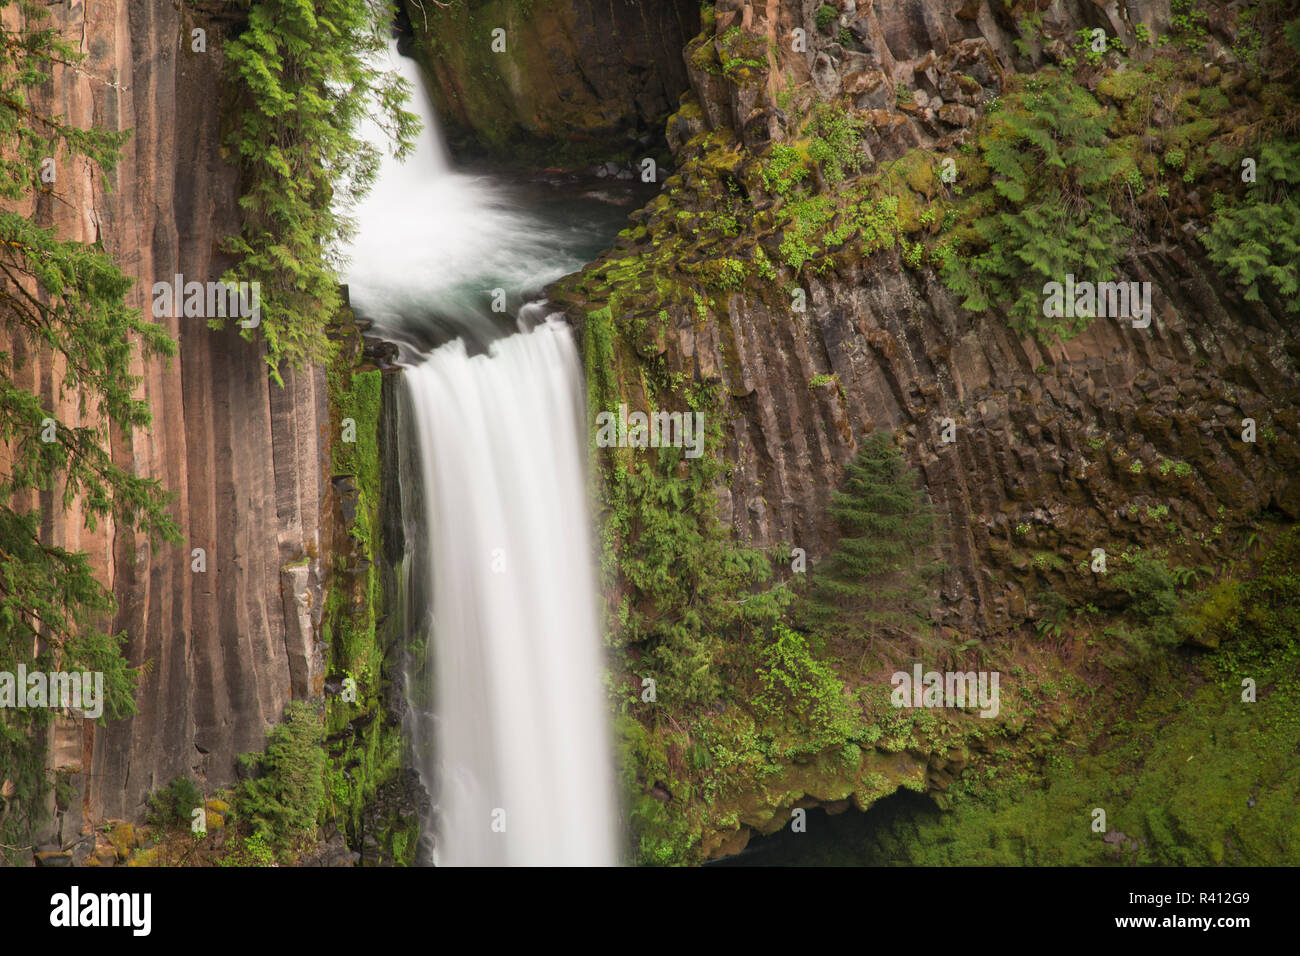 USA, Oregon. Toketee Falls flows over columnar basalt rock cliff. Stock Photo